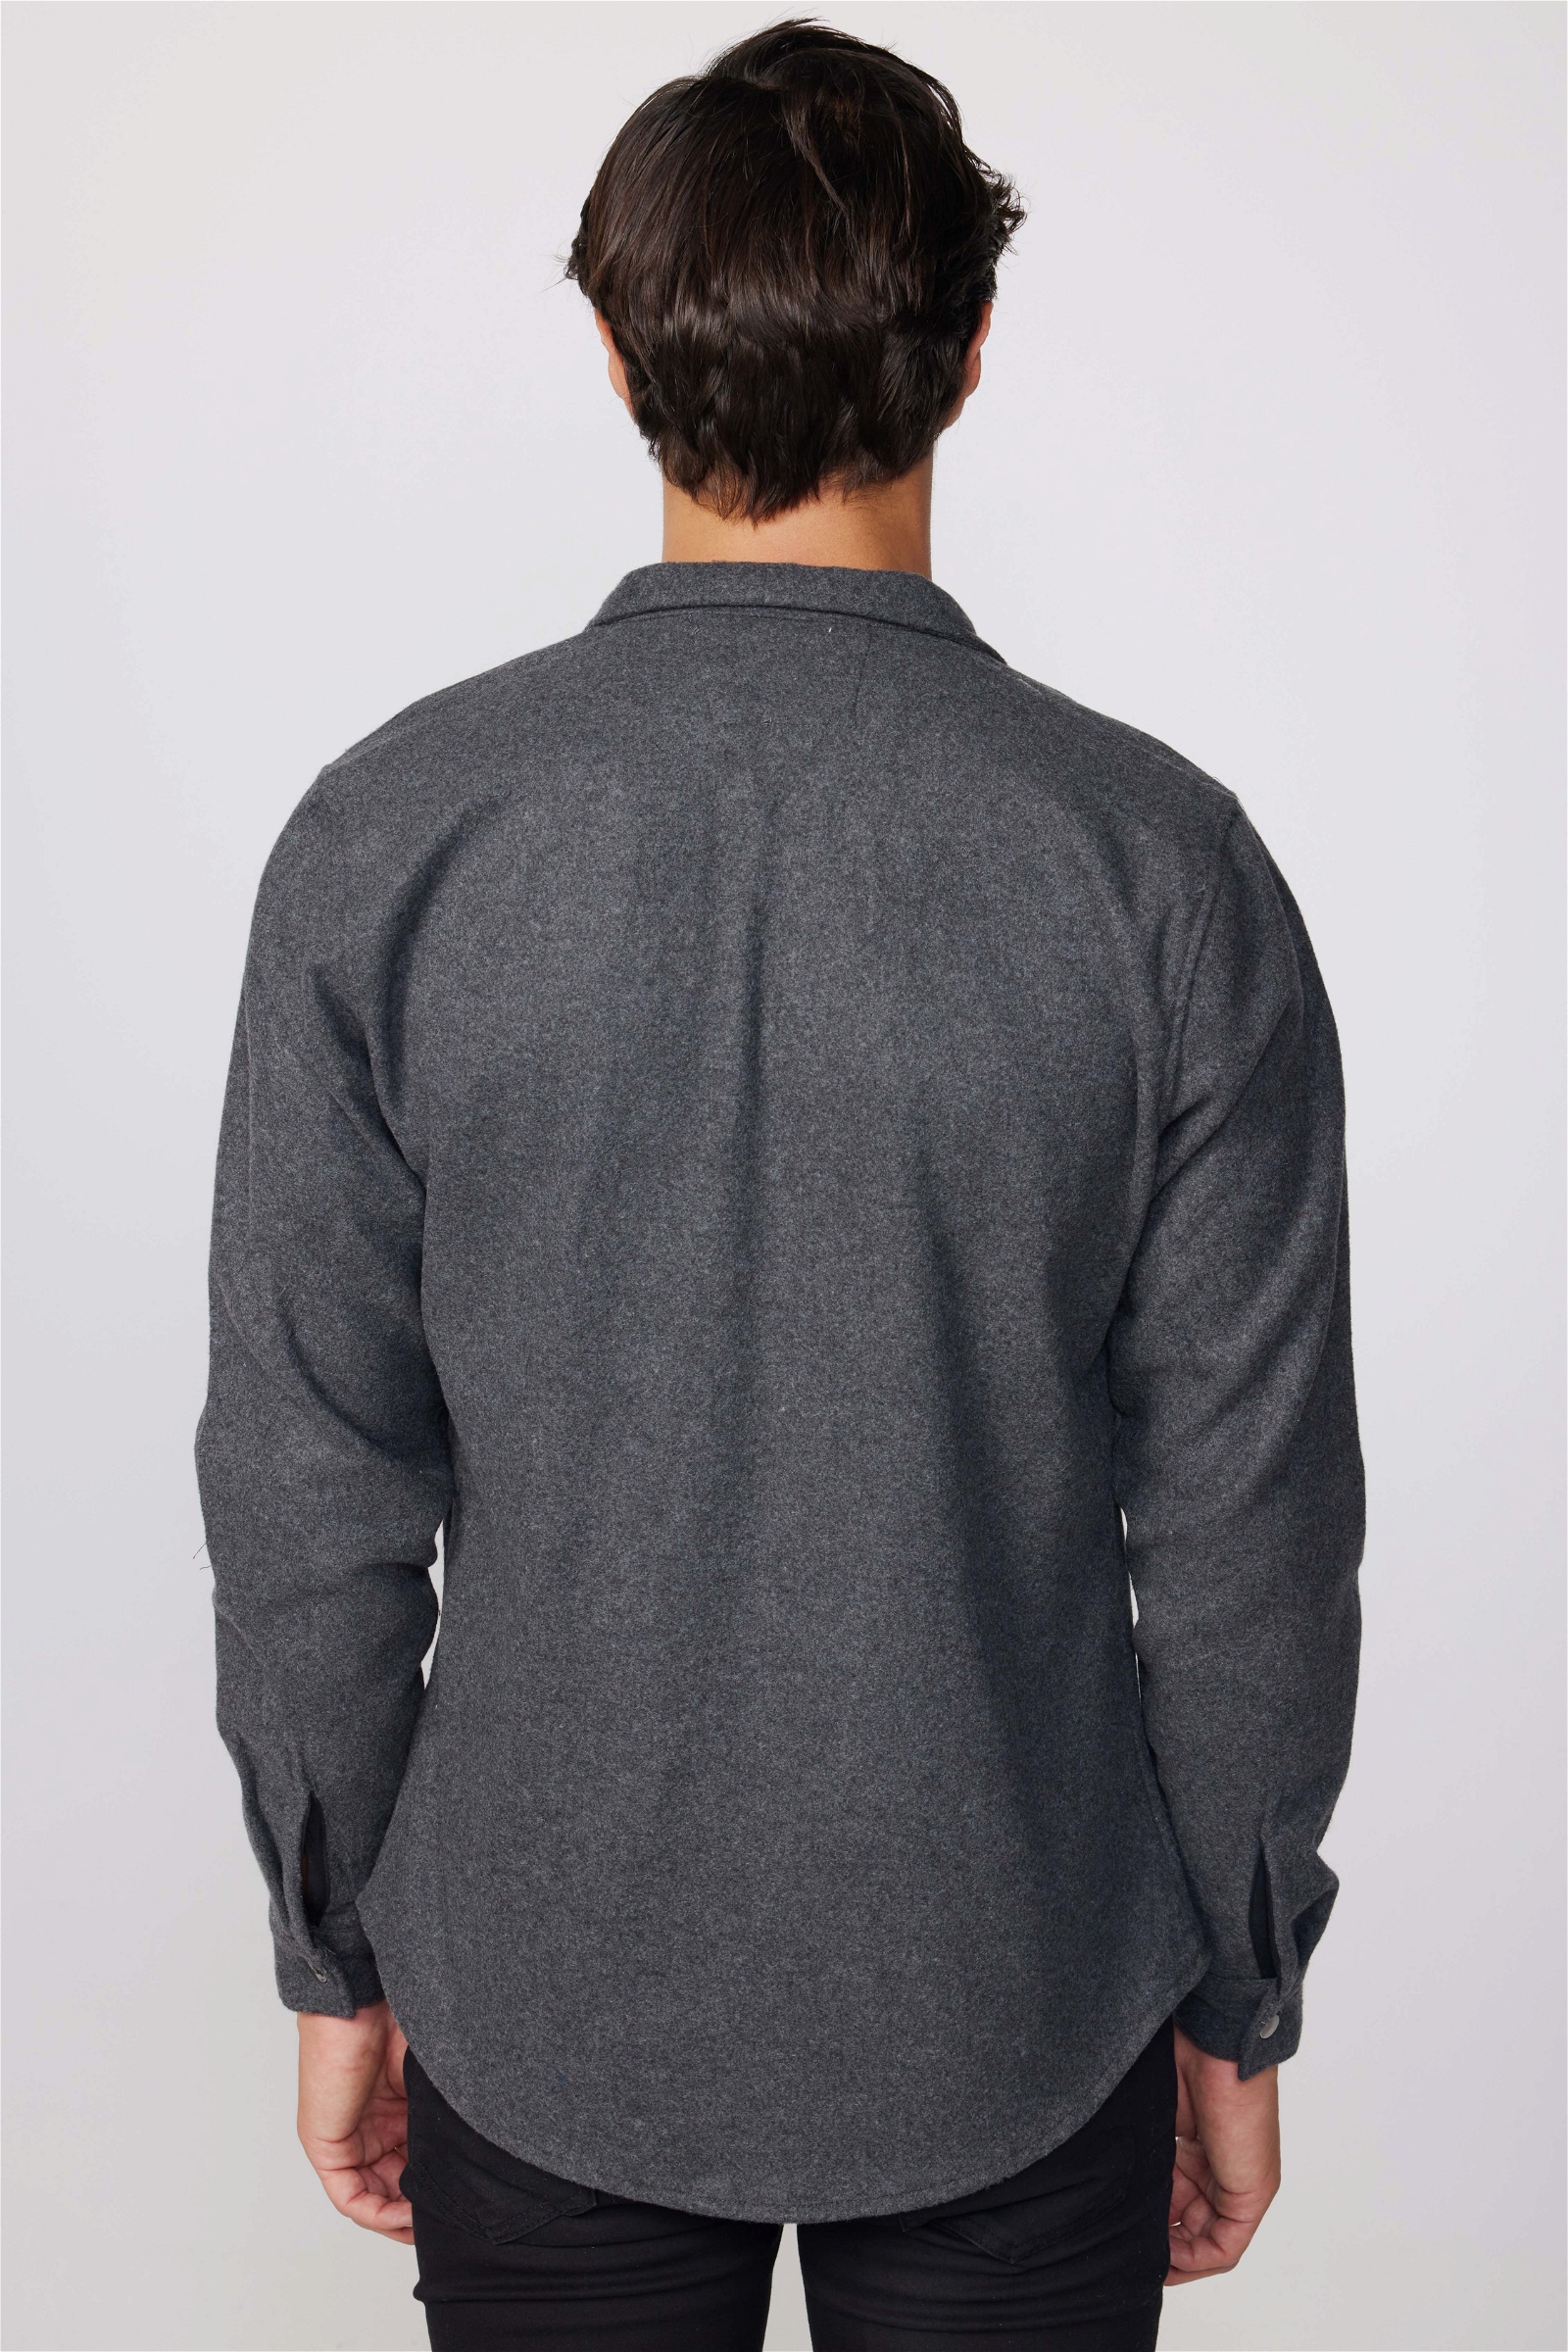 Plain Grey Shirt